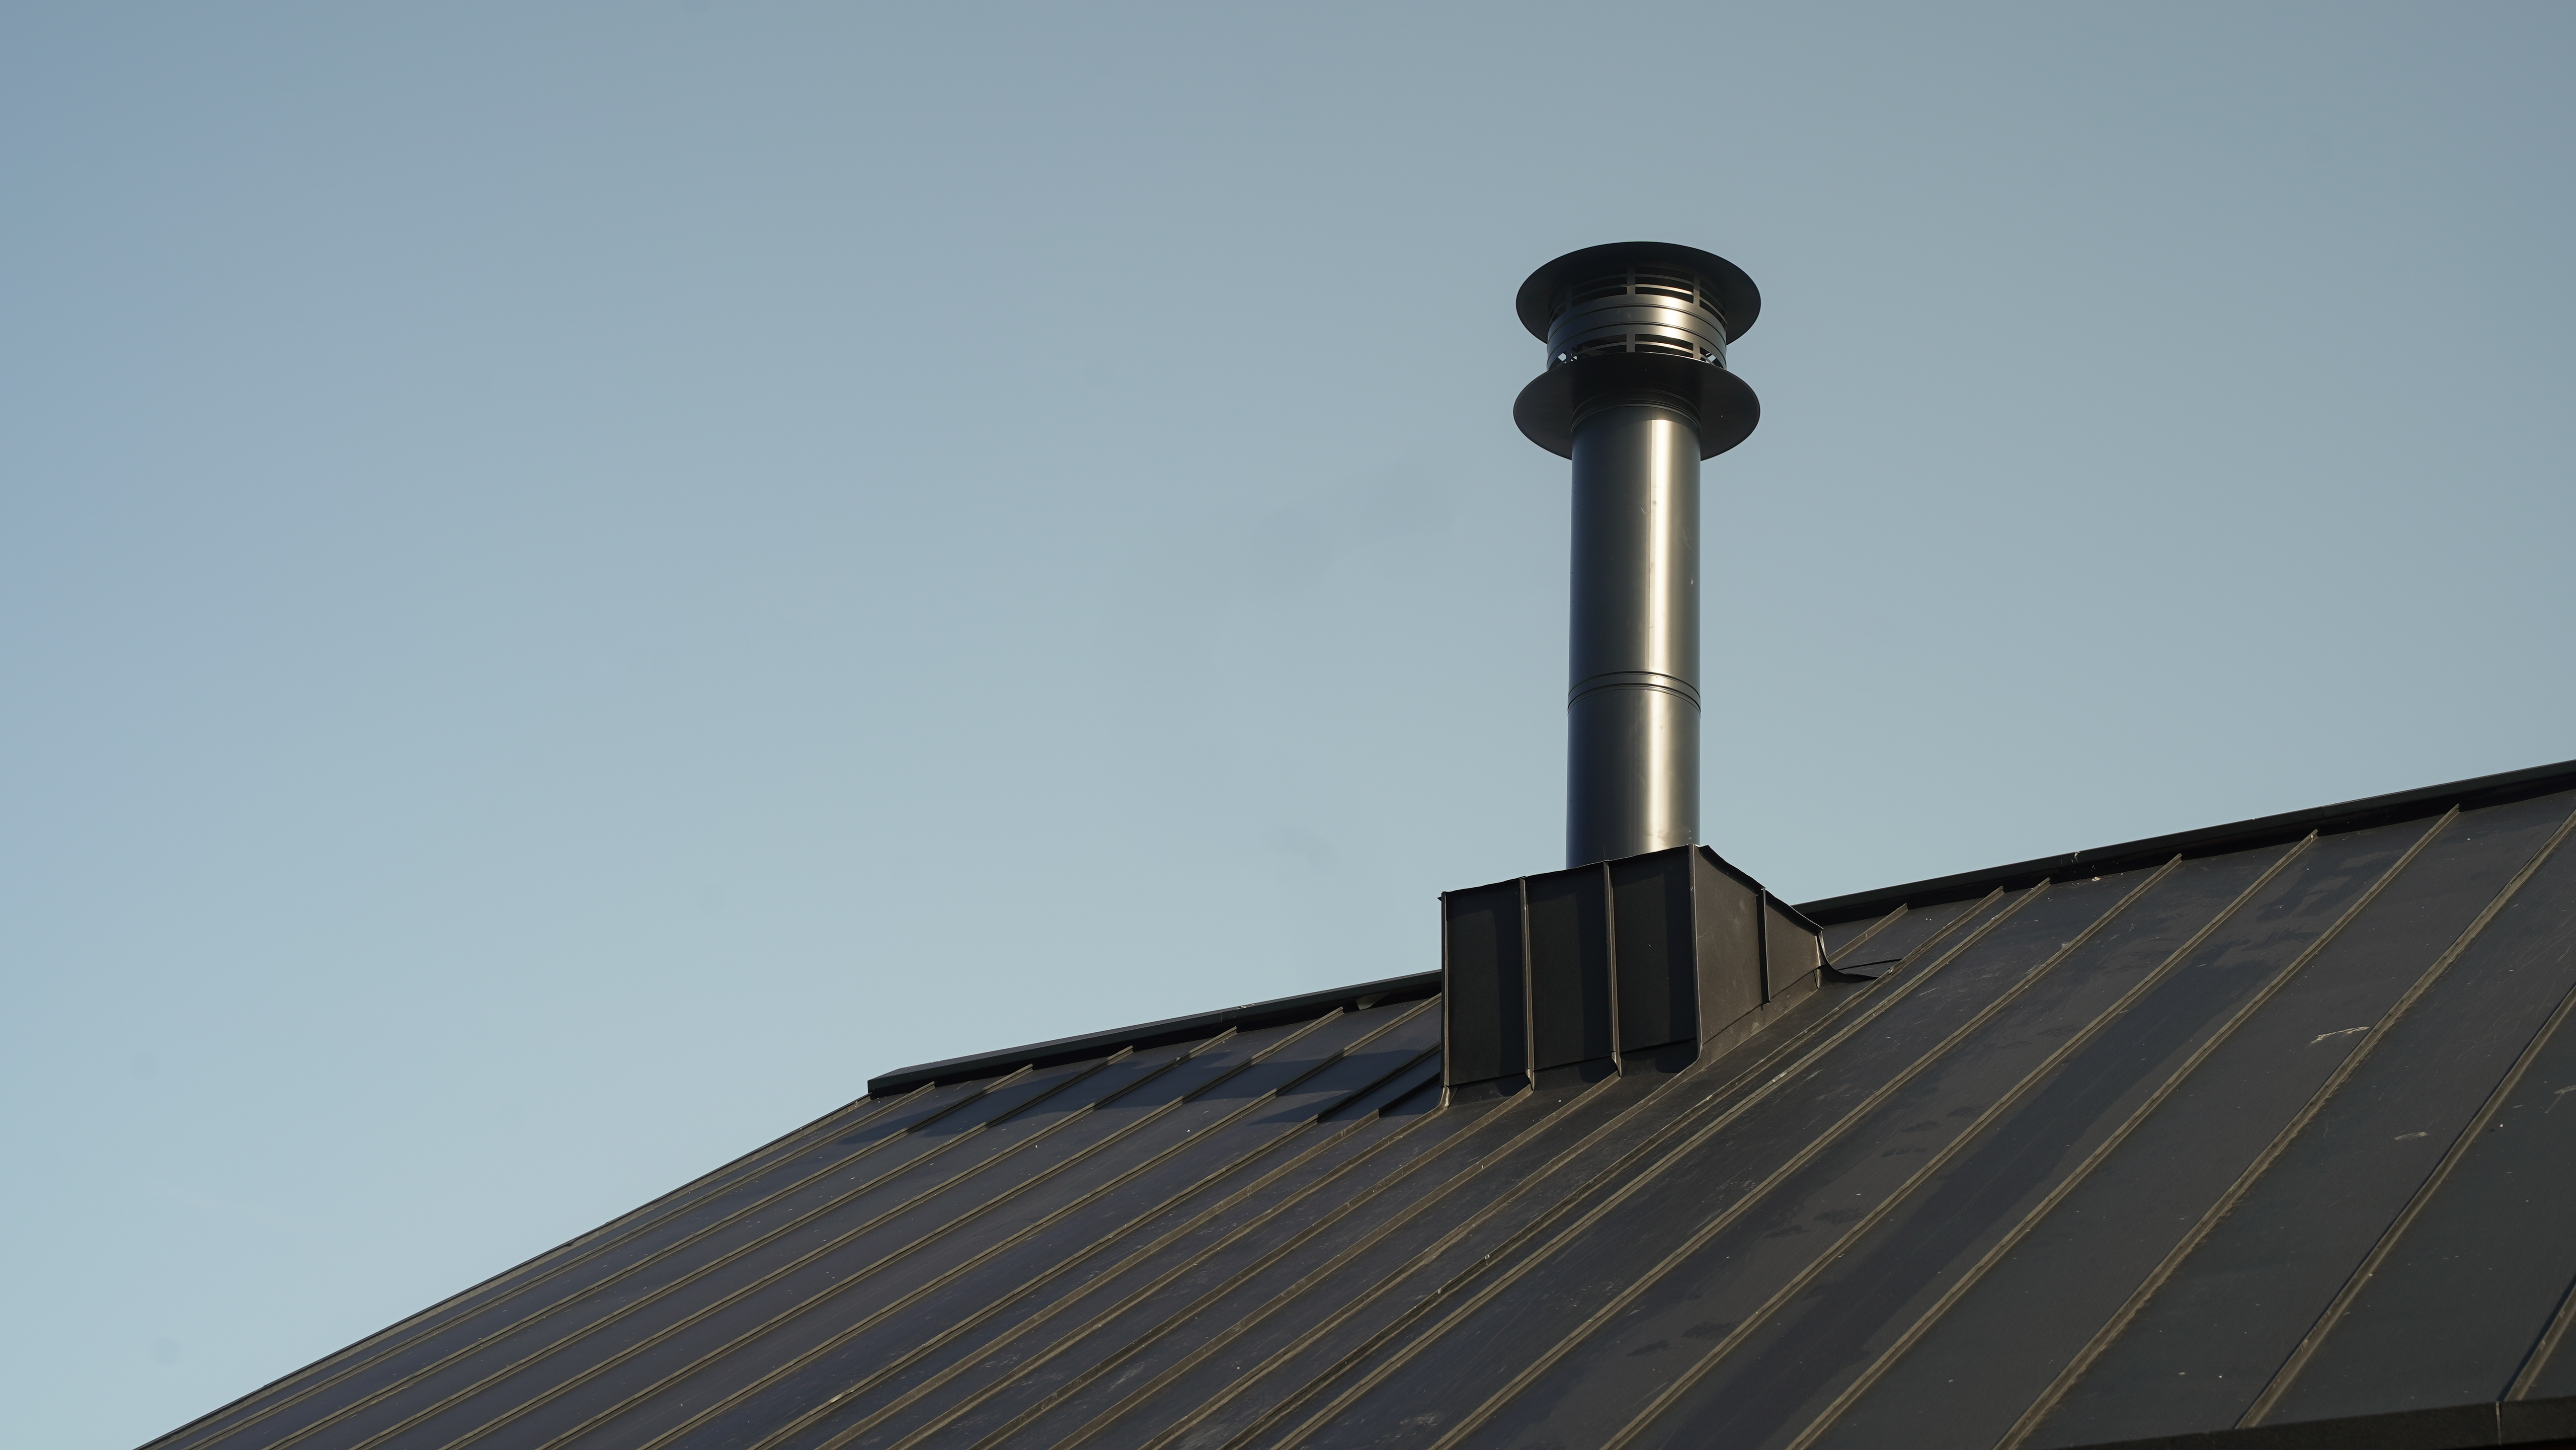 Detailaufnahme eines PREFALZ Dachsystems in P.10 Schwarz am Gebäudekomplex der Golfanlage "Golf it!" in Glasgow, Schottland, mit einem hervorstechenden, modernen Kamin. Der Kamin erhebt sich elegant über die präzise verlegten, dunklen Stehfalzbahnen, die für ihre Langlebigkeit und Robustheit bekannt sind. Dieses Bild unterstreicht die Kombination von Funktionalität und Design, die PREFA Aluminiumprodukte bieten.